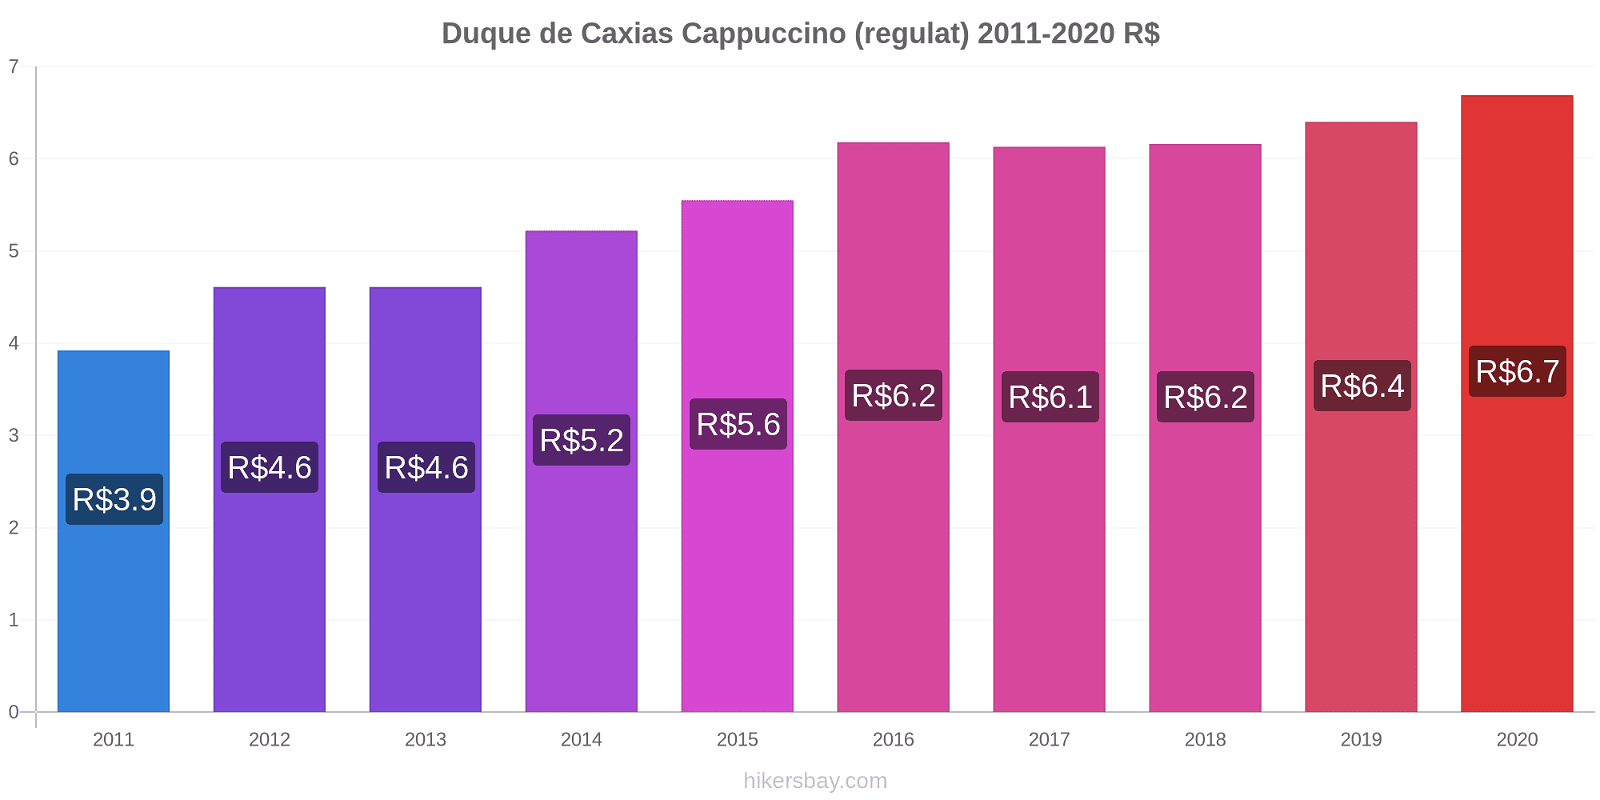 Duque de Caxias modificări de preț Cappuccino (regulat) hikersbay.com